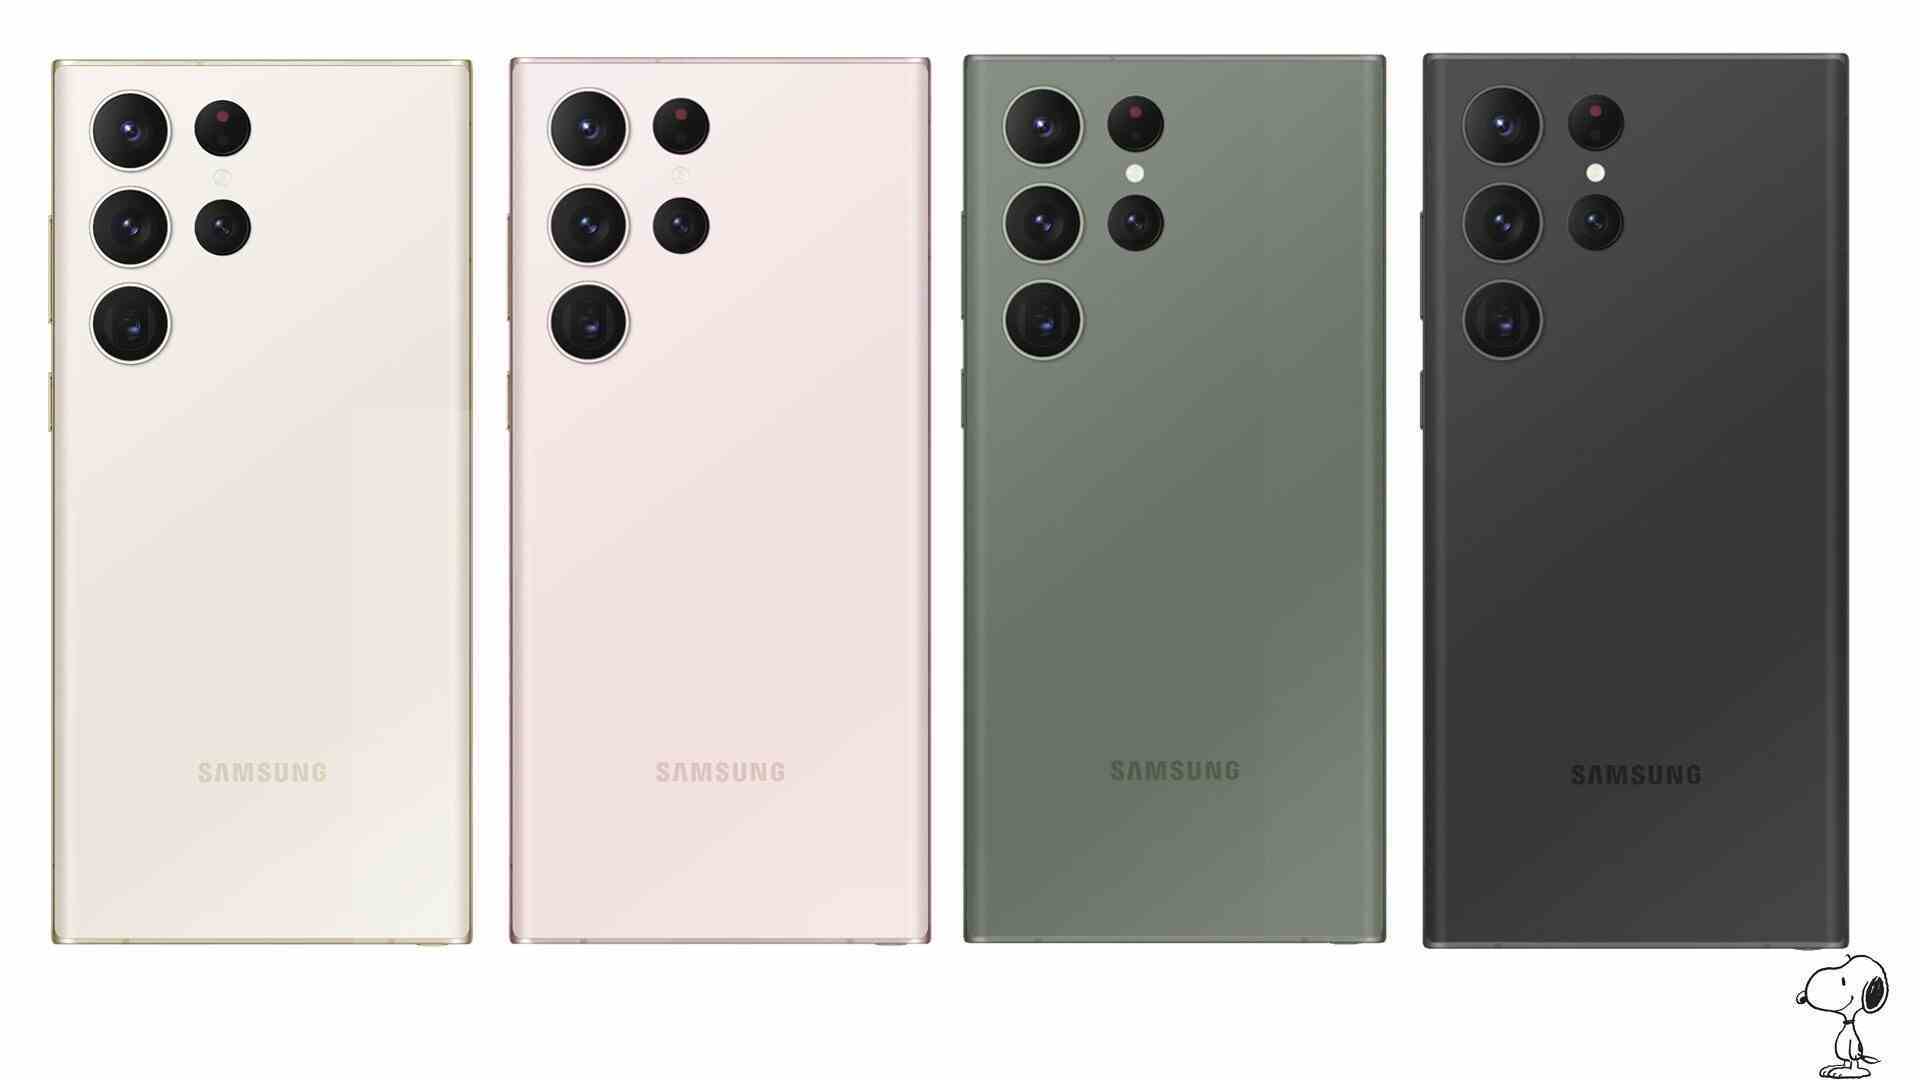 Galaxy S23 Ultra renkleri - Yeni resimler, Galaxy S23 serisi için tüm renk seçeneklerini gösterir